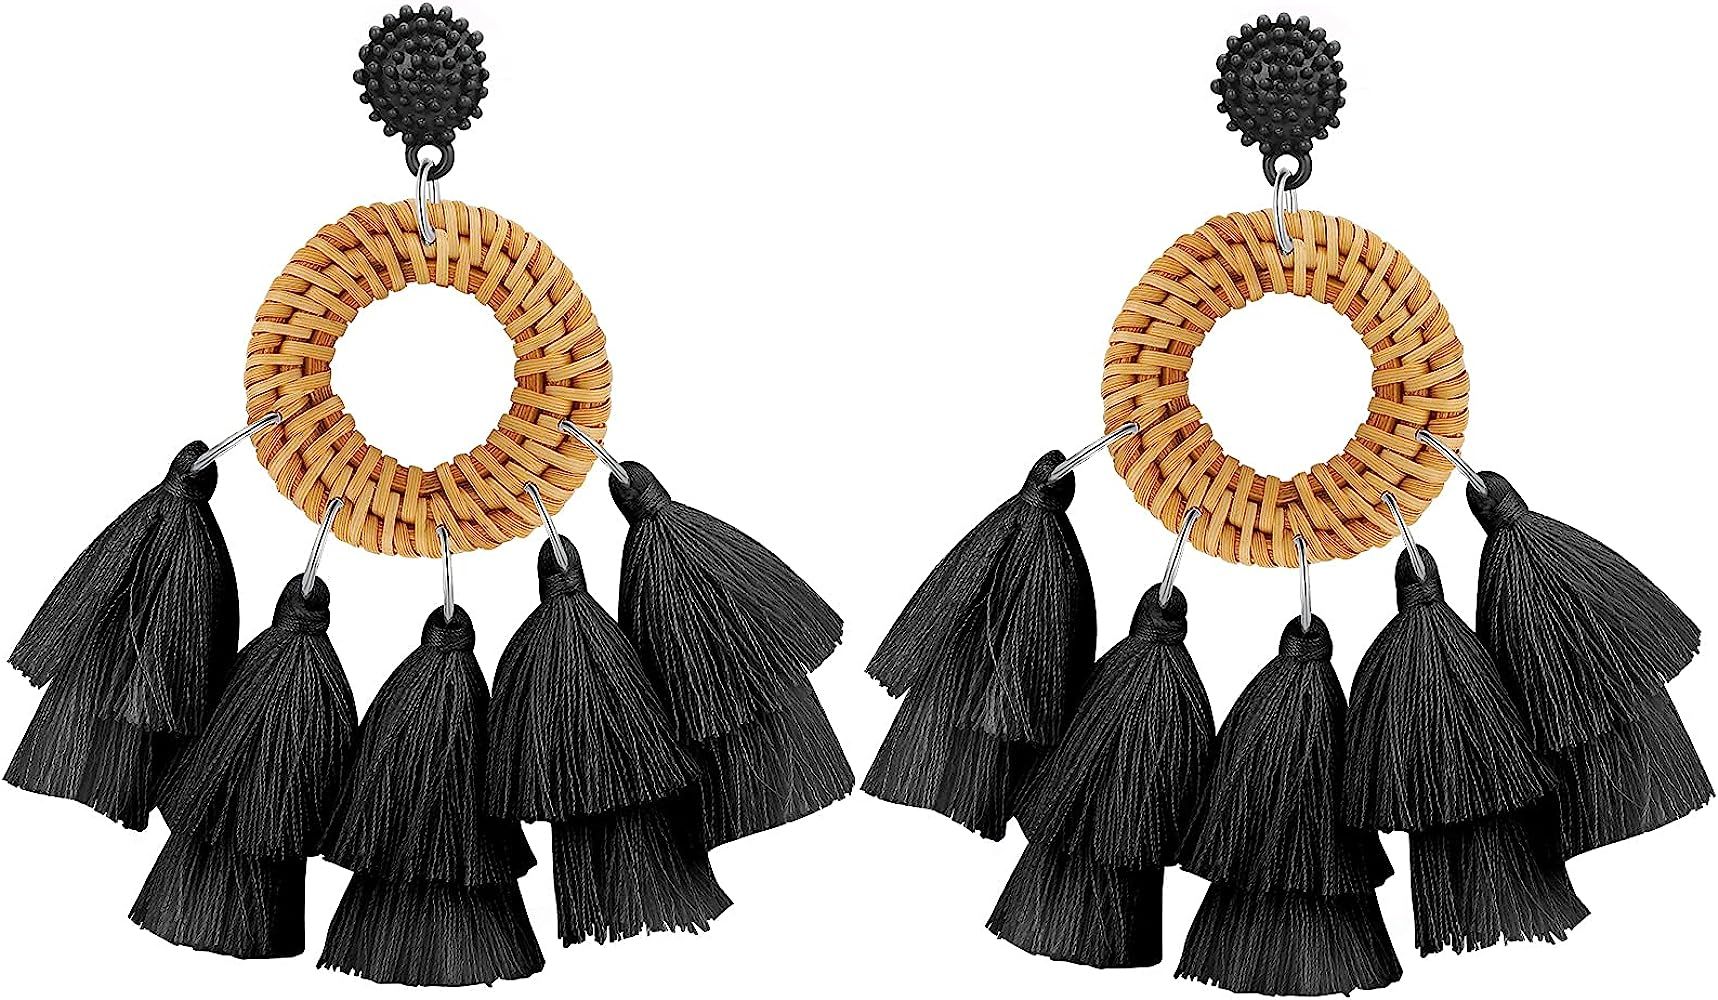 WFYOU Rattan Tassel Earrings for Women Bohemian Statement Handmade Woven Drop Dangle Earrings | Amazon (US)